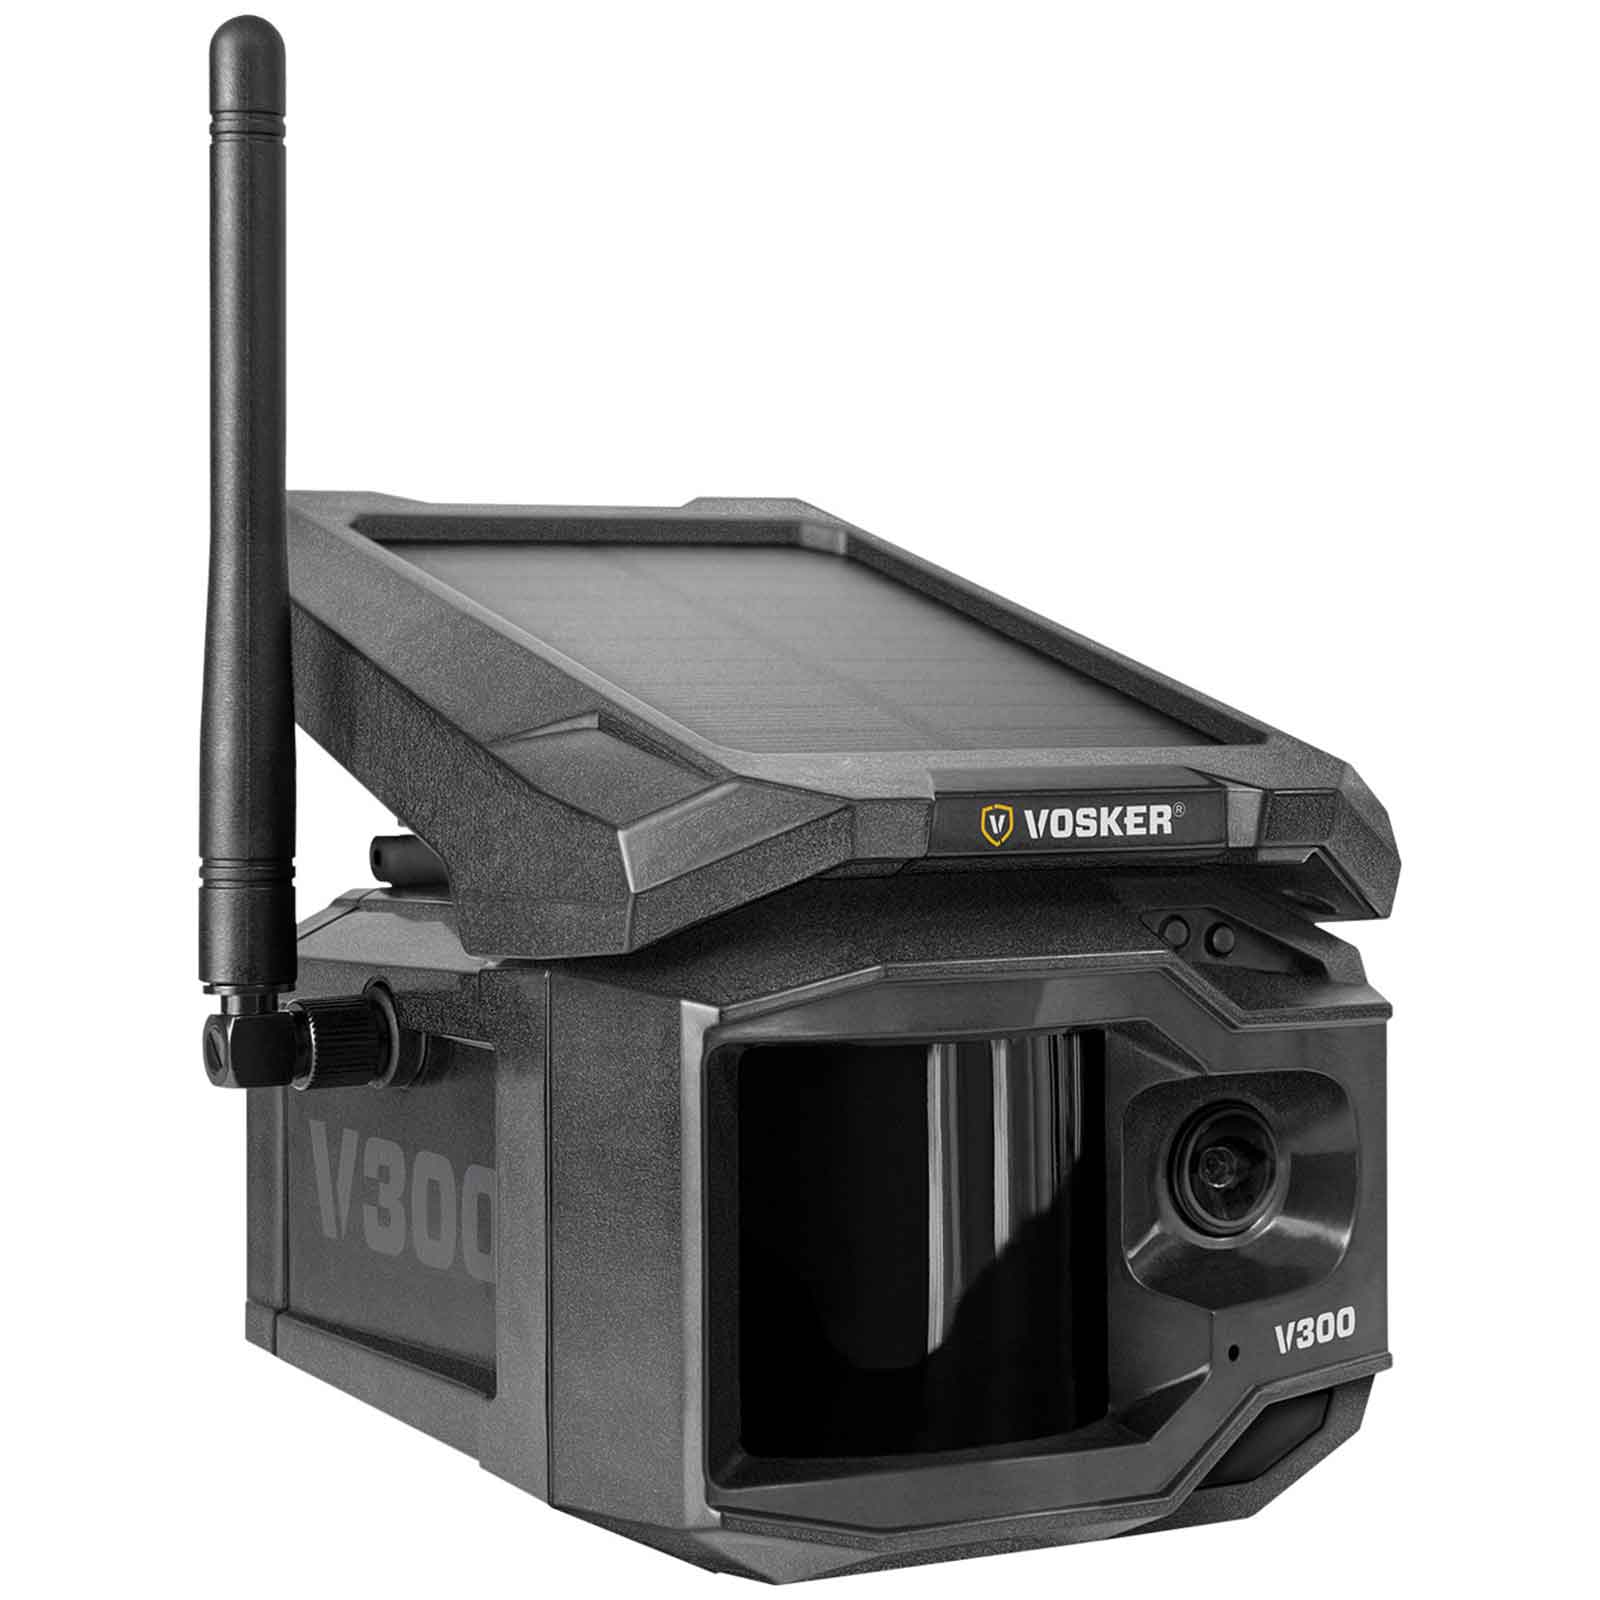 Vosker V300 Telecamera di sorveglianza + Powerbank Solare + Base Annuale